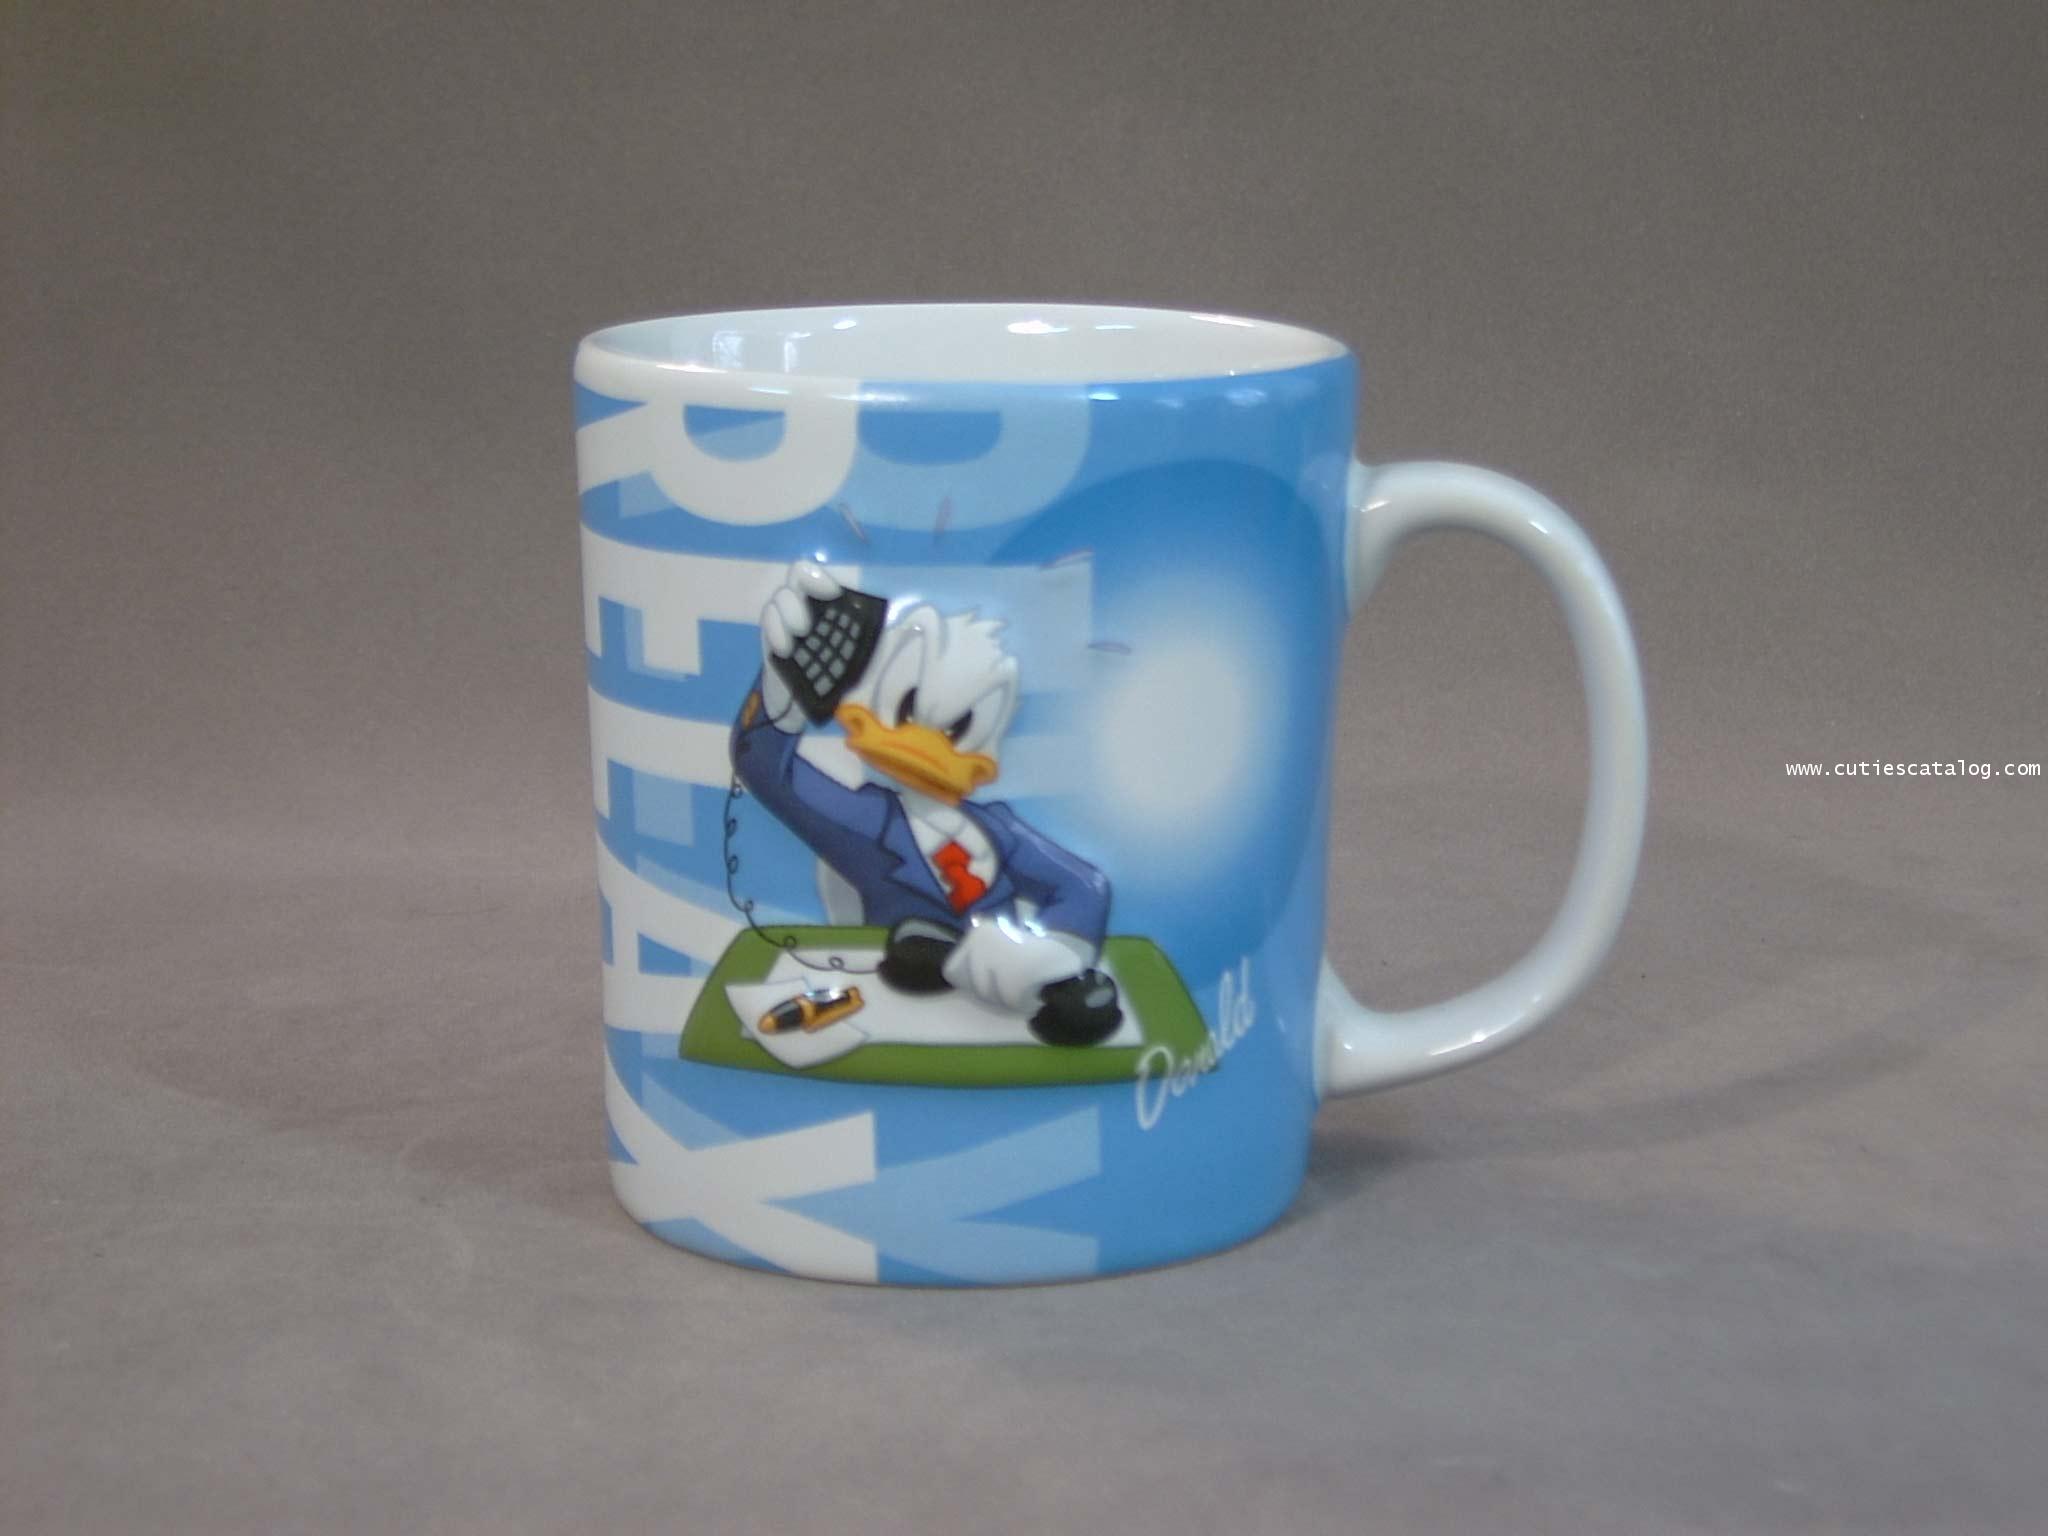 แก้วดิสนีย์ ชุดเลทโกทูเวิร์ต ลายโดนัลด์ ดั๊ก(Donald Duck)